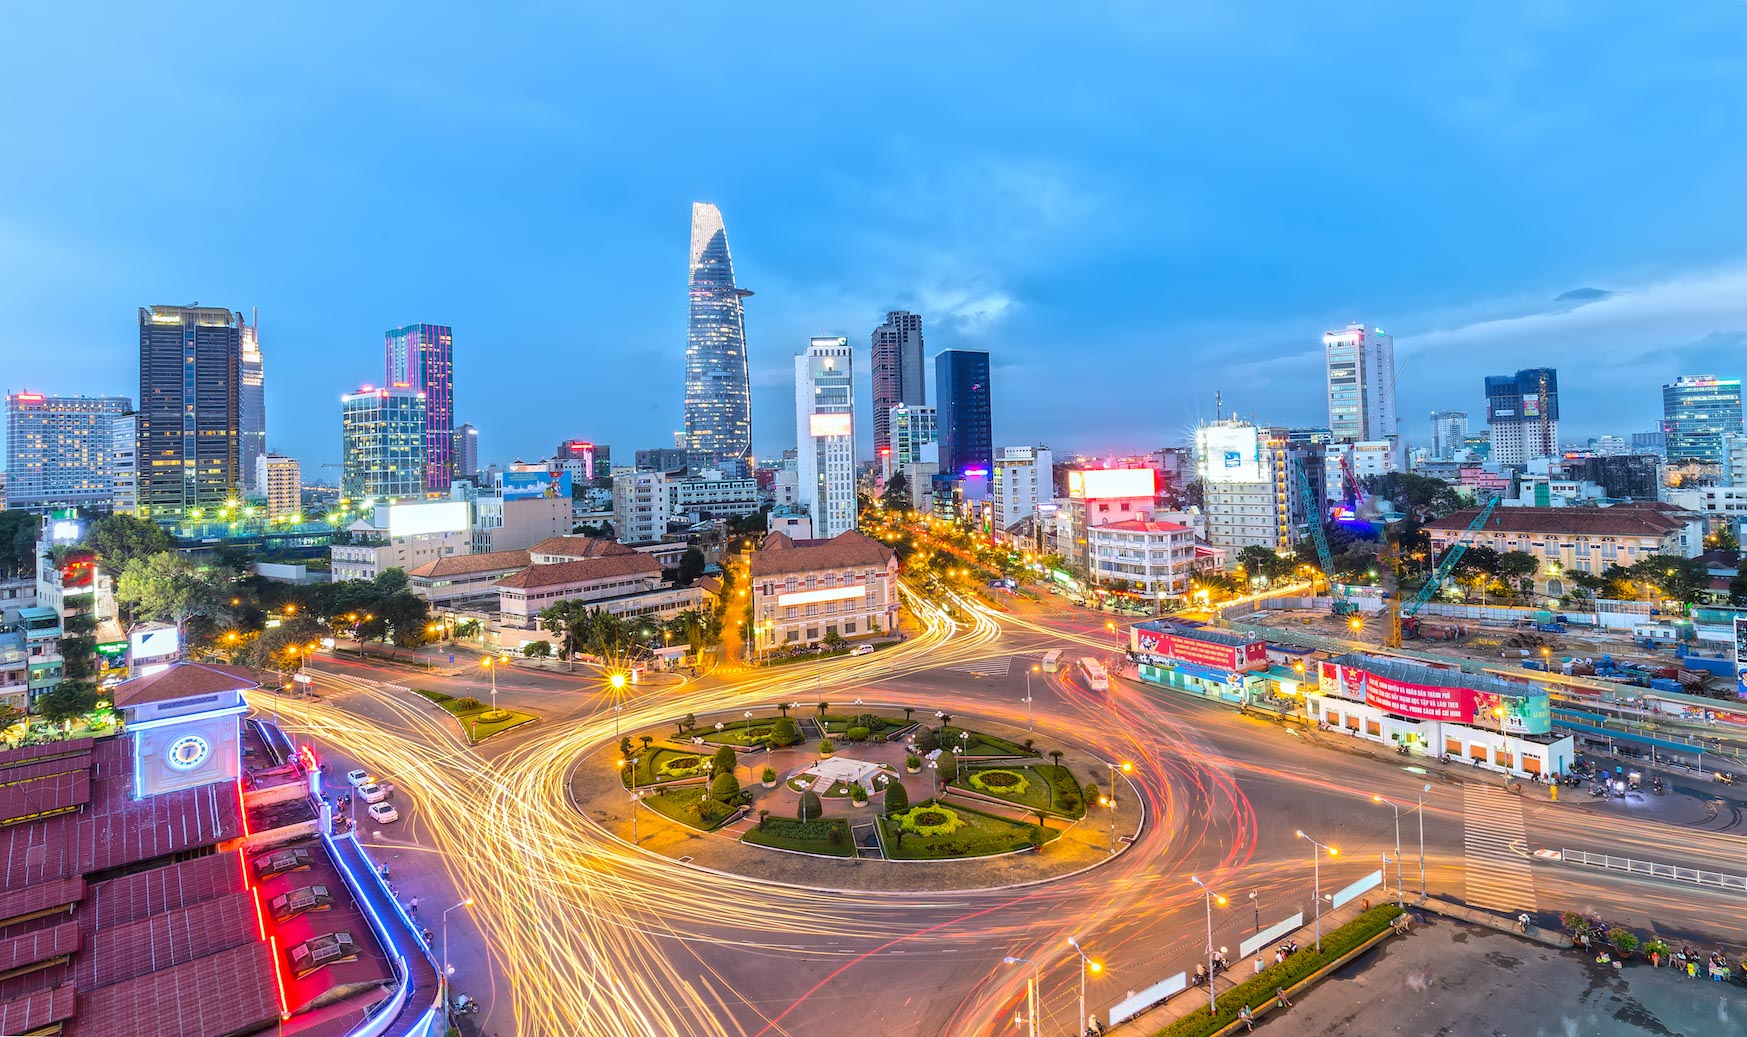 Theo chỉ số Morgen Stanley Composite Index (MSCI), Việt Nam hiện đang được phân loại là Thị trường biên, nhưng đang dần chuyển đổi thành Thị trường mới nổi có tiềm năng thu hút nhiều đầu tư nước ngoài hơn. 